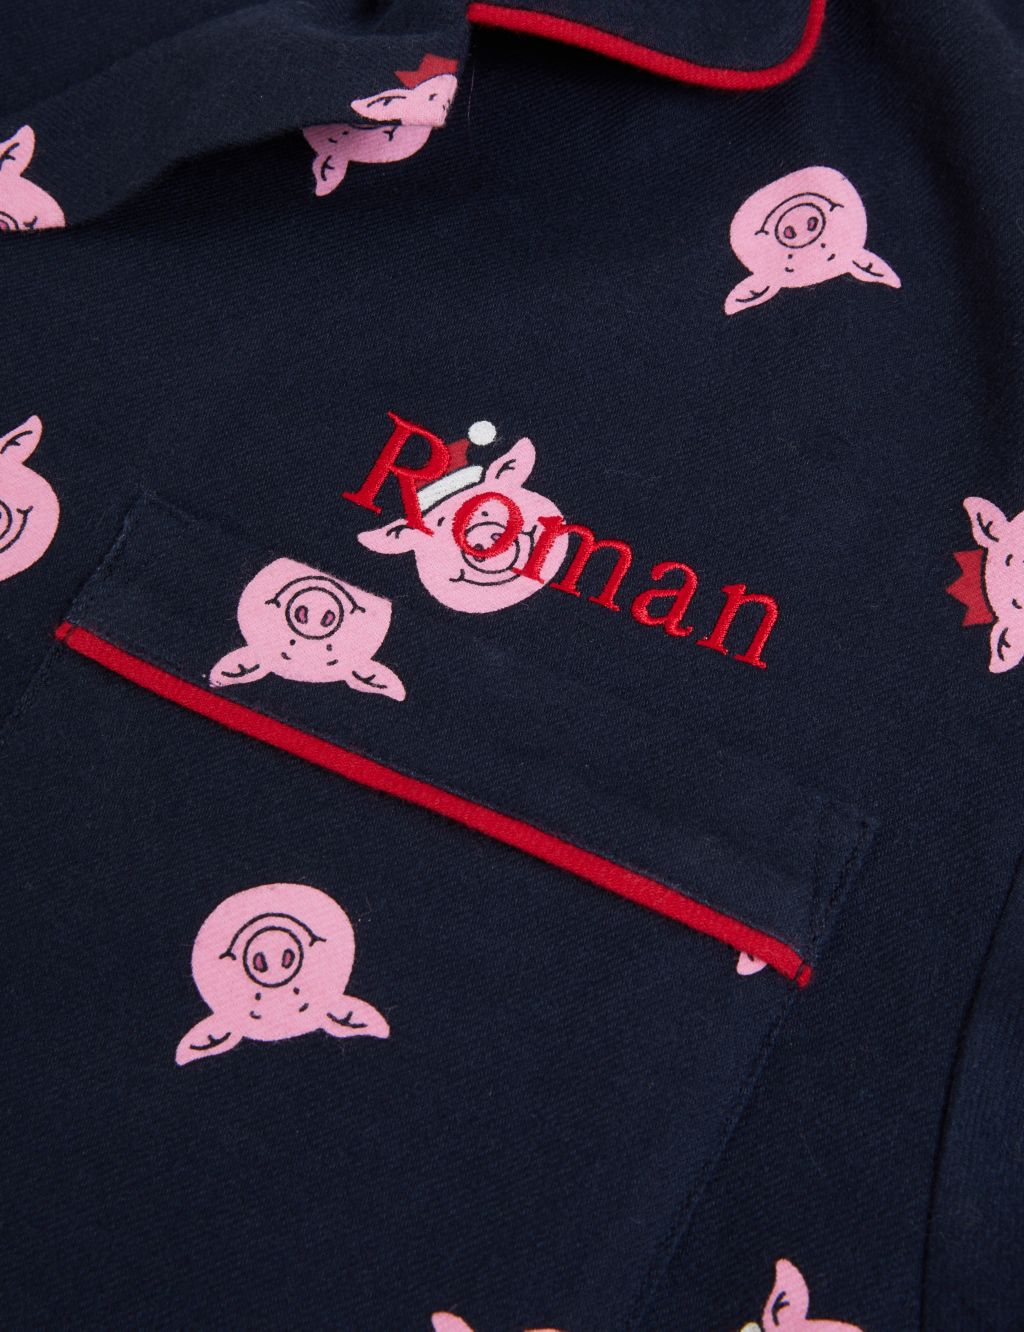 Personalised Men's Percy Pig™ Pyjamas 2 of 2